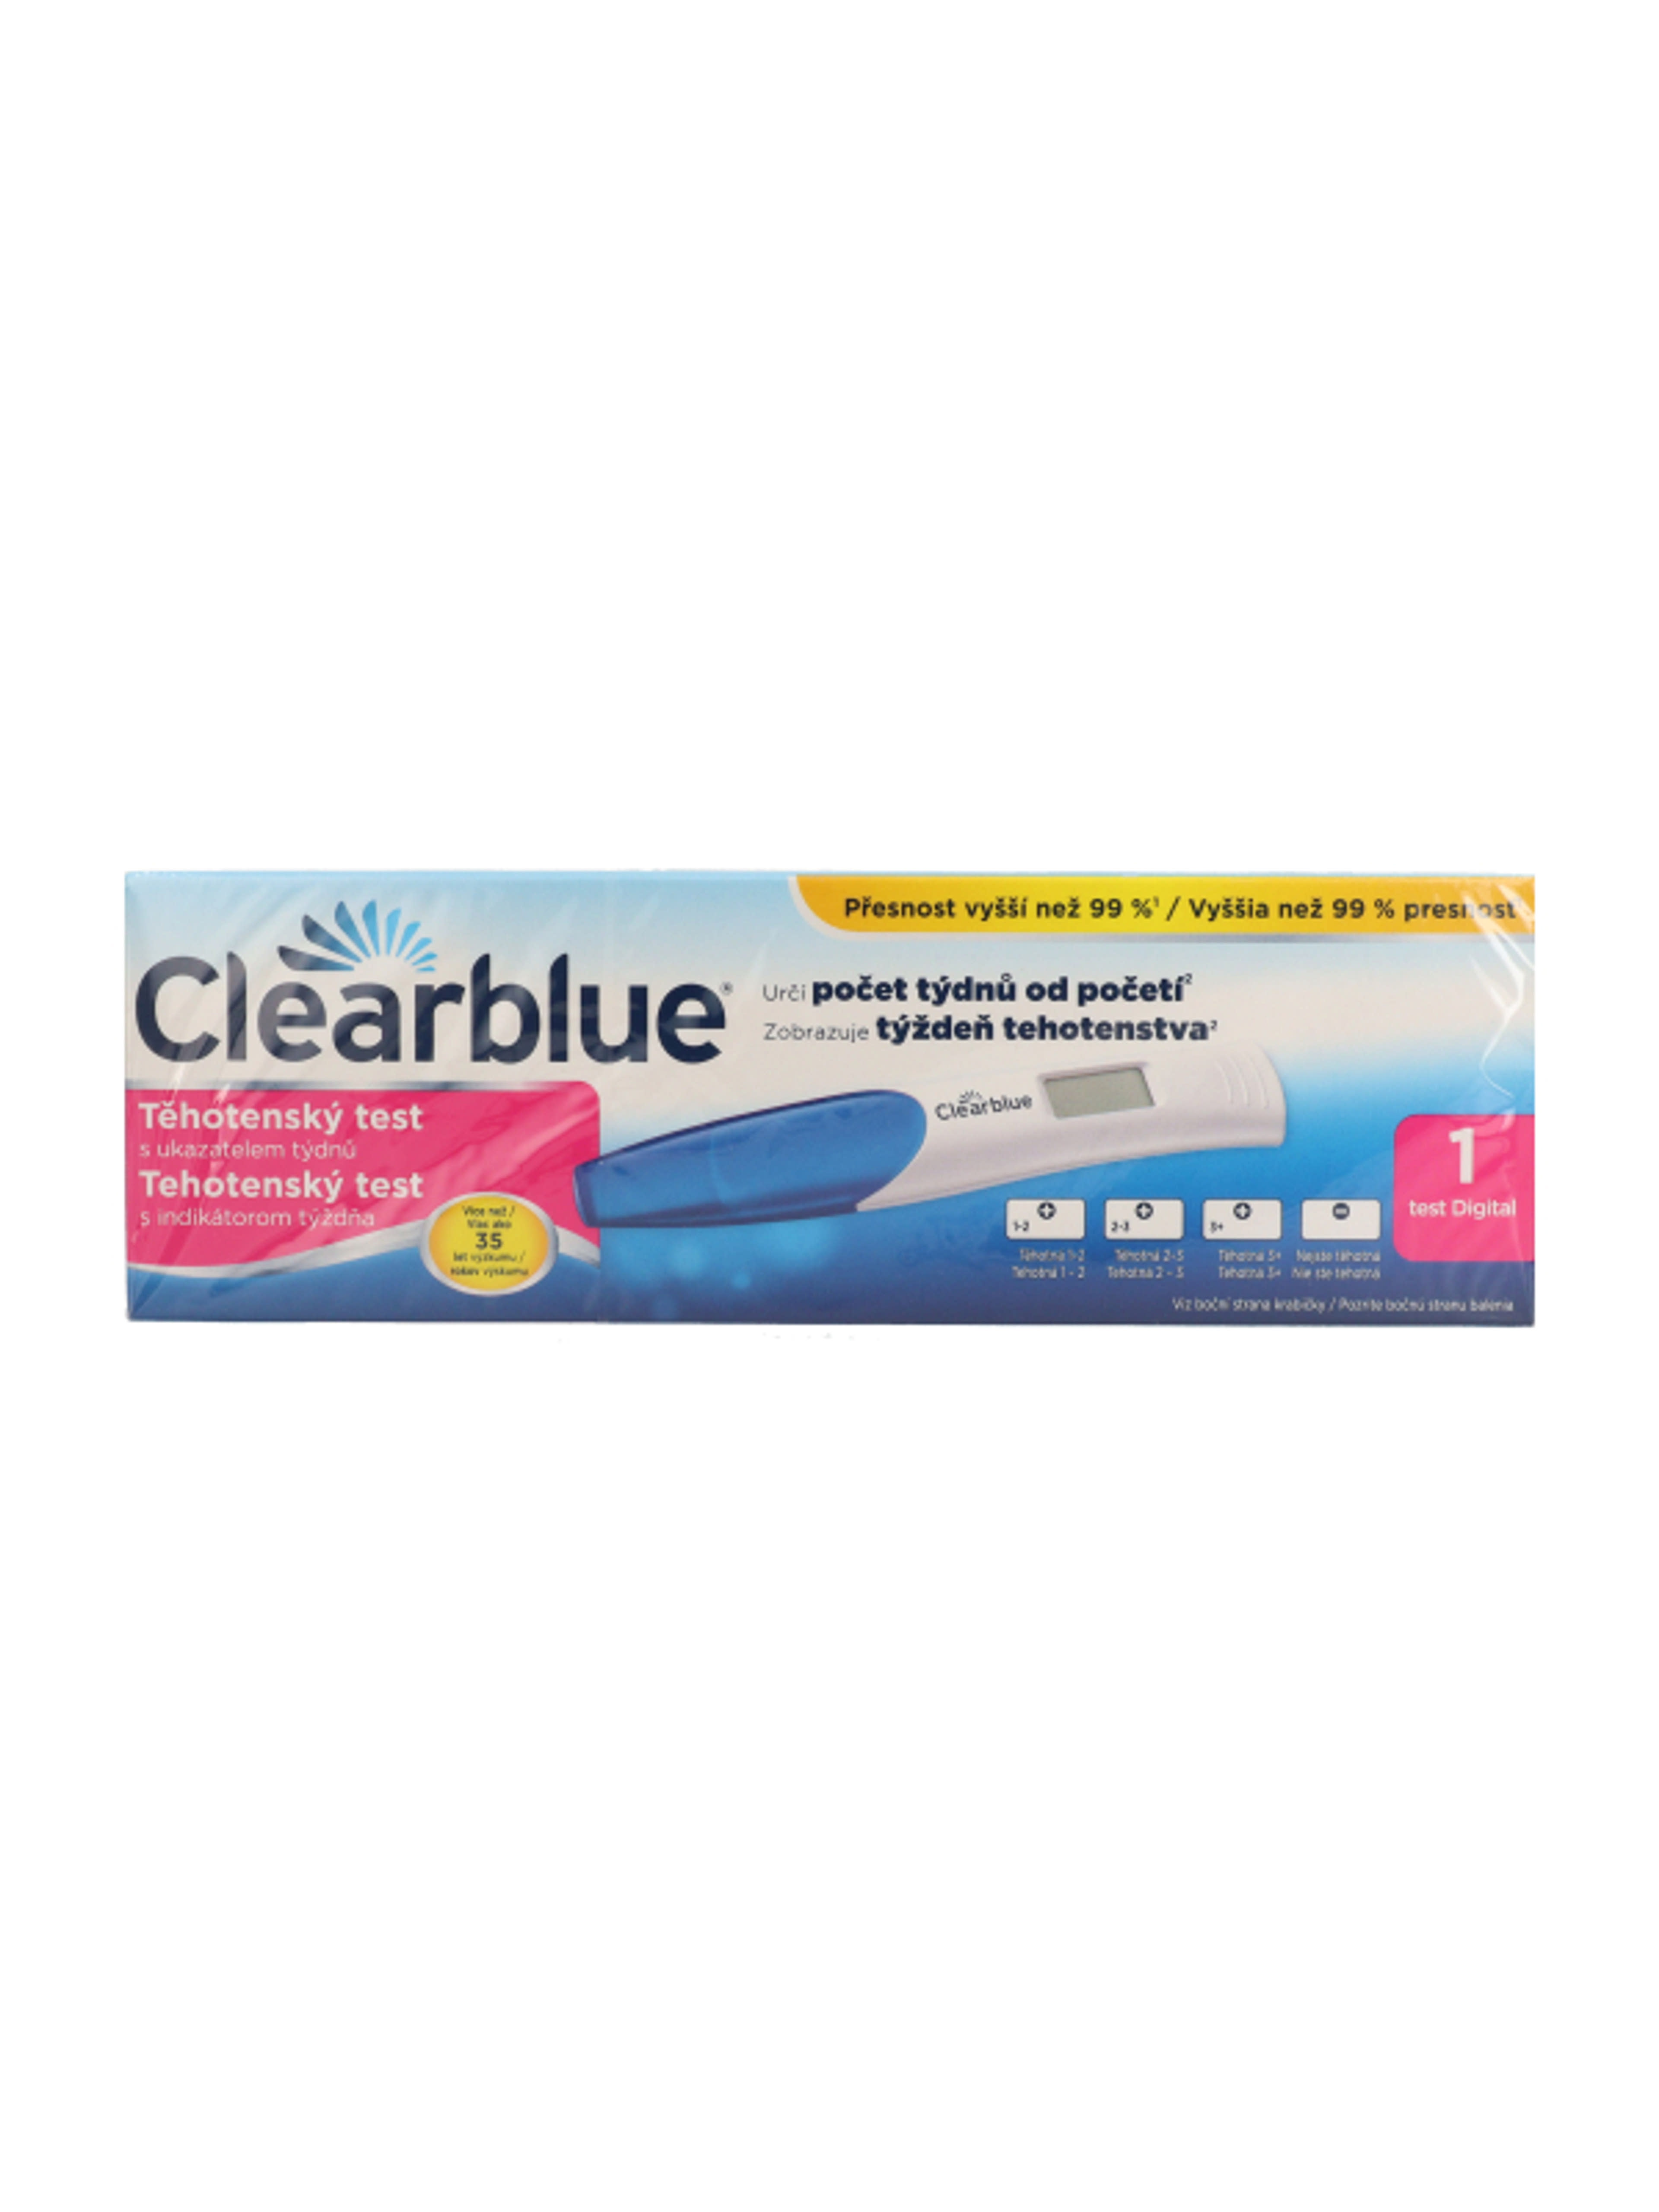 Clearblue Digitális terhességi teszt fogamzásjelzovel - 1 db-2